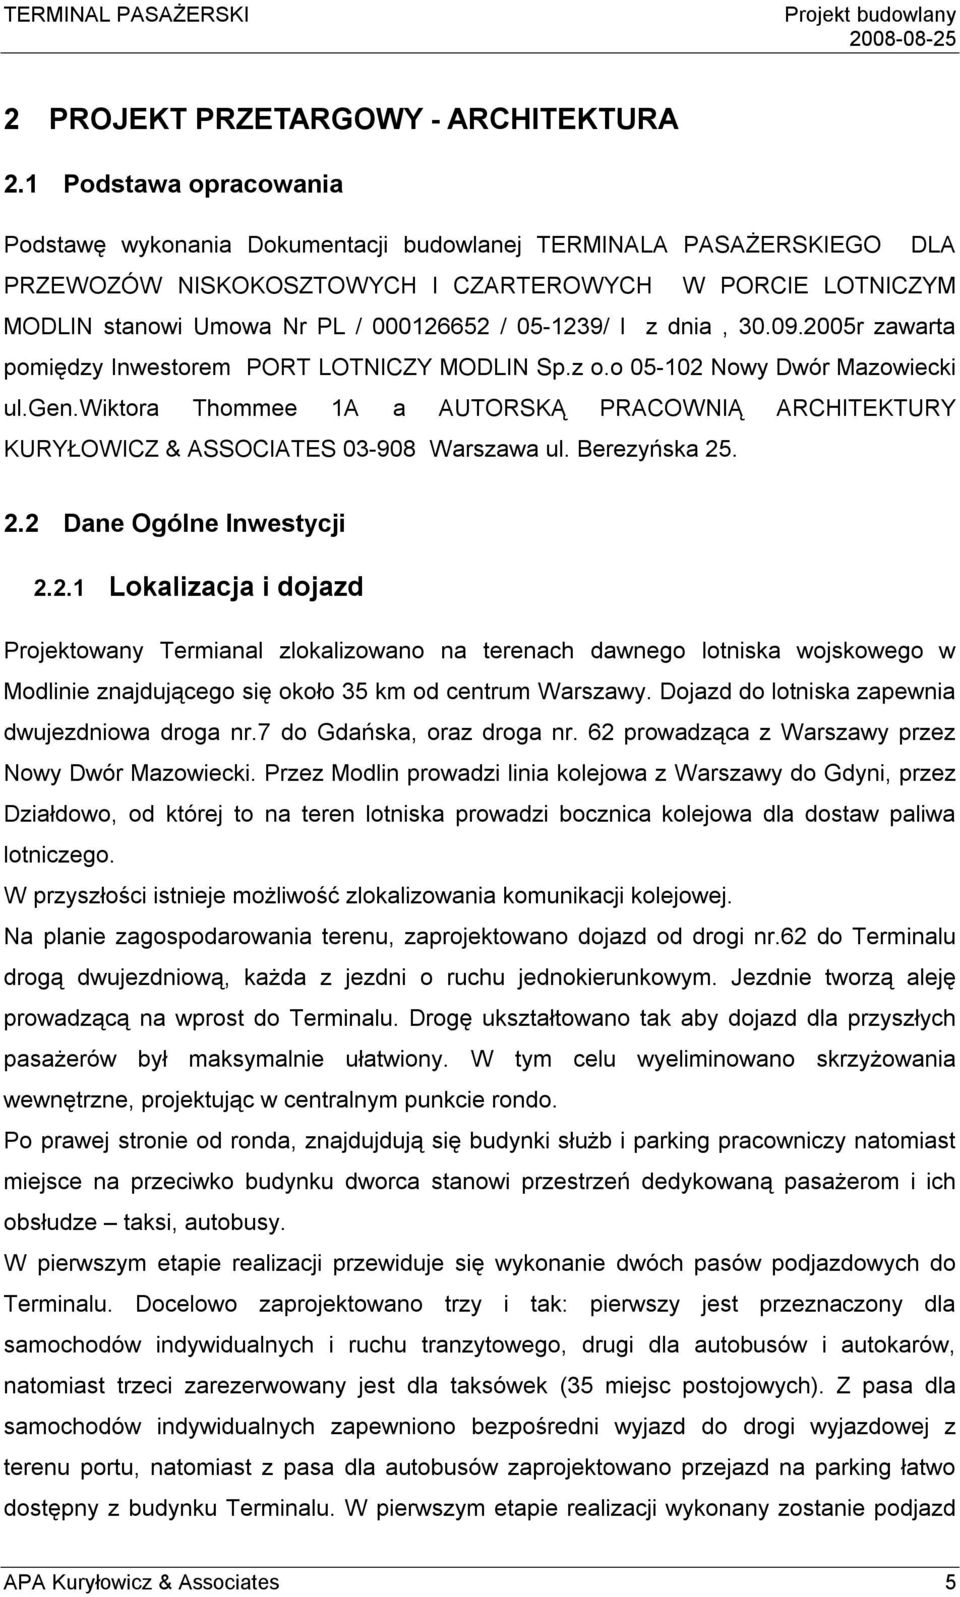 05-1239/ I z dnia, 30.09.2005r zawarta pomiędzy Inwestorem PORT LOTNICZY MODLIN Sp.z o.o 05-102 Nowy Dwór Mazowiecki ul.gen.